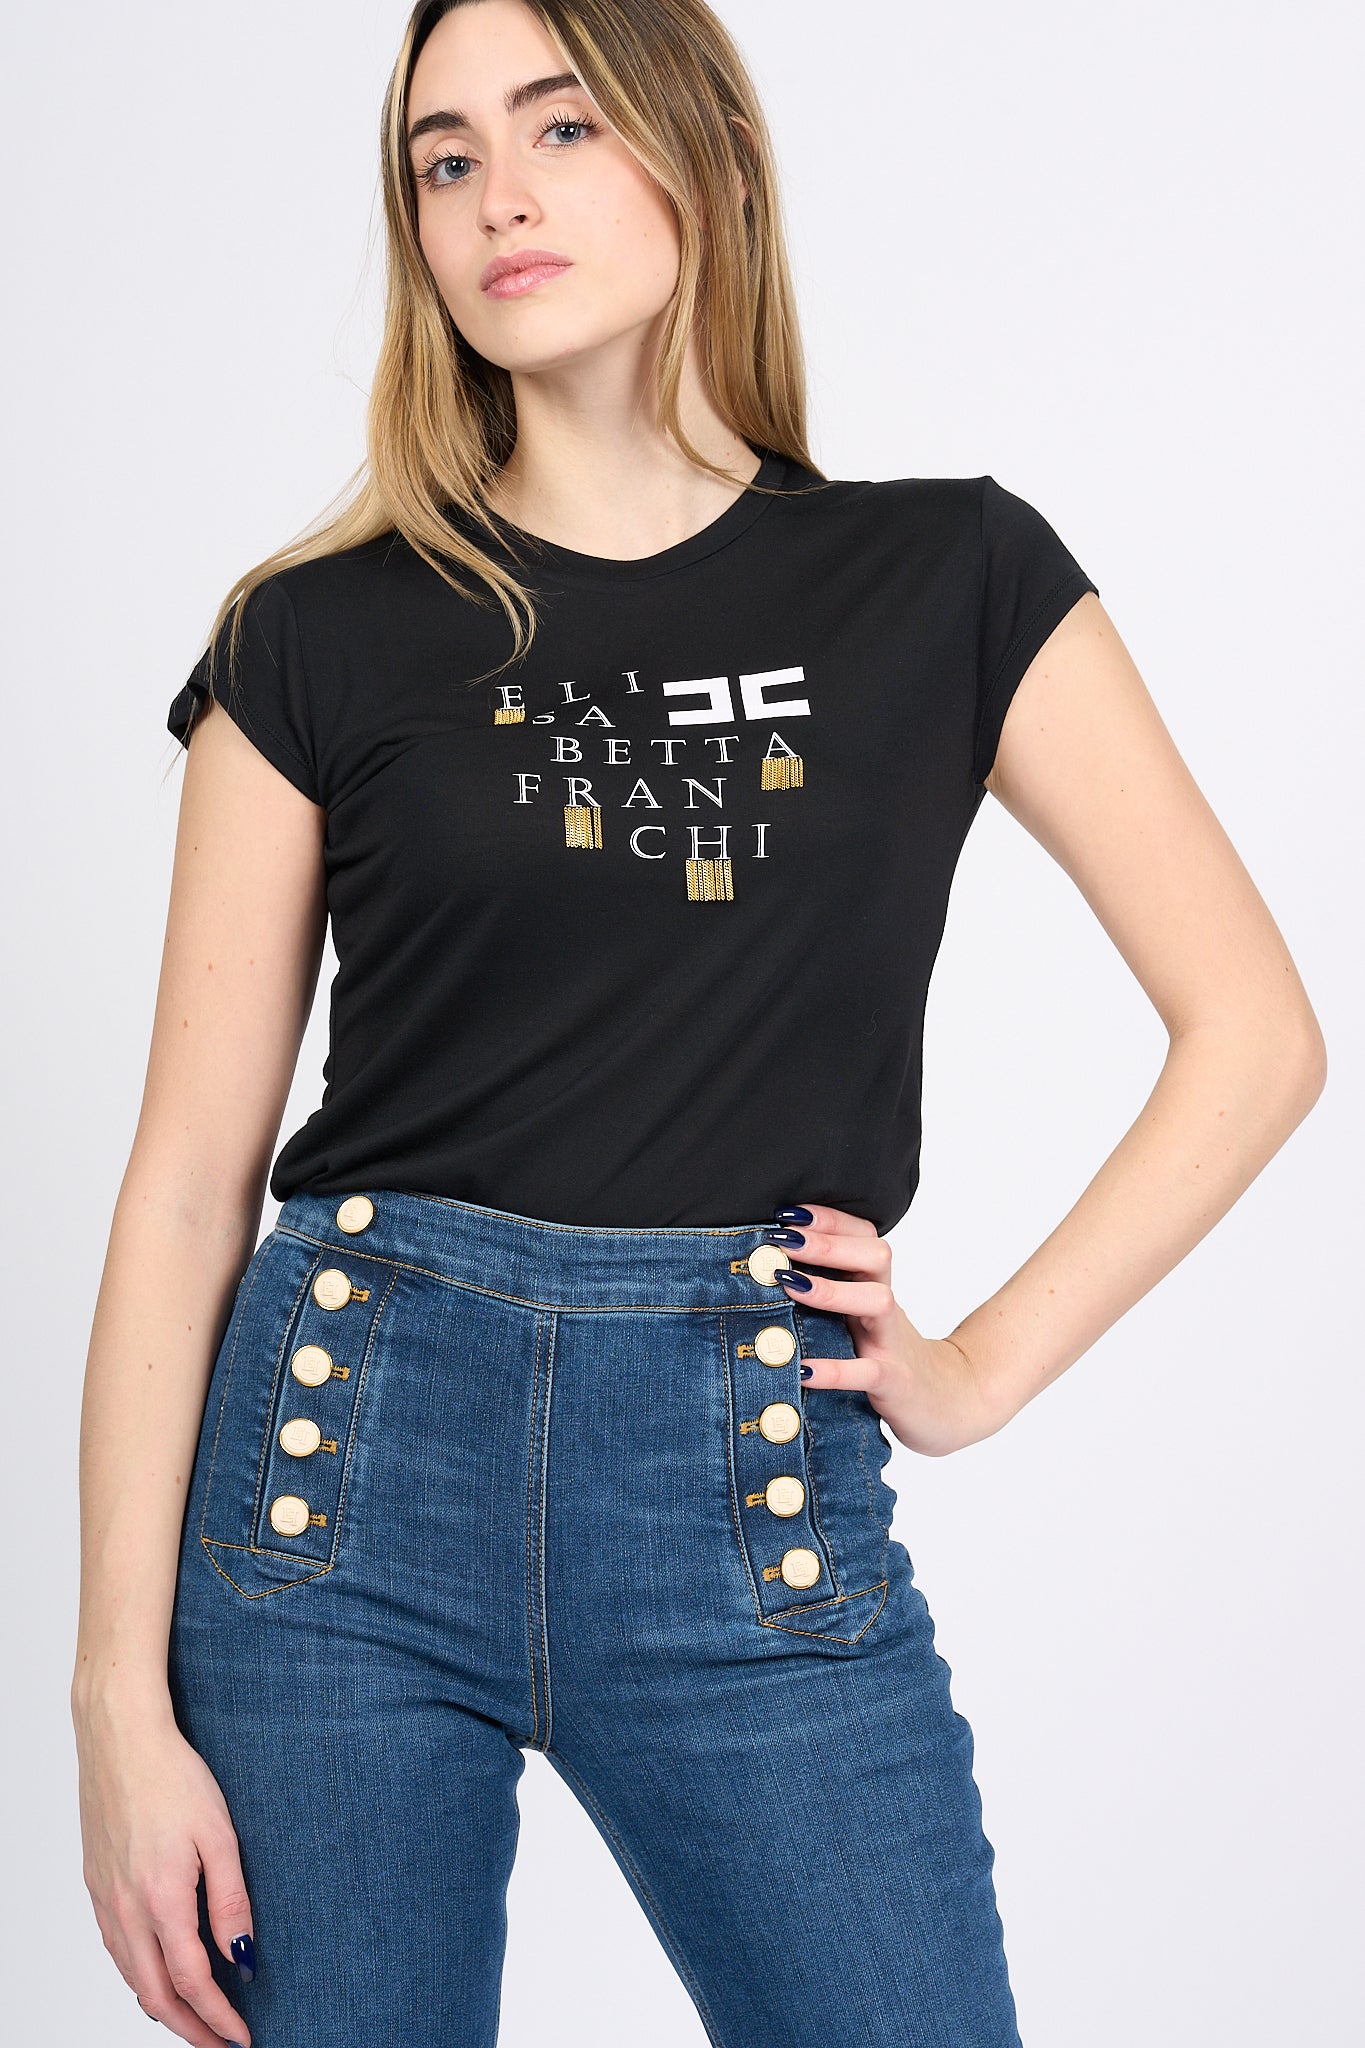 Elisabetta Franchi T-shirt con Catenelle Nero Donna-3